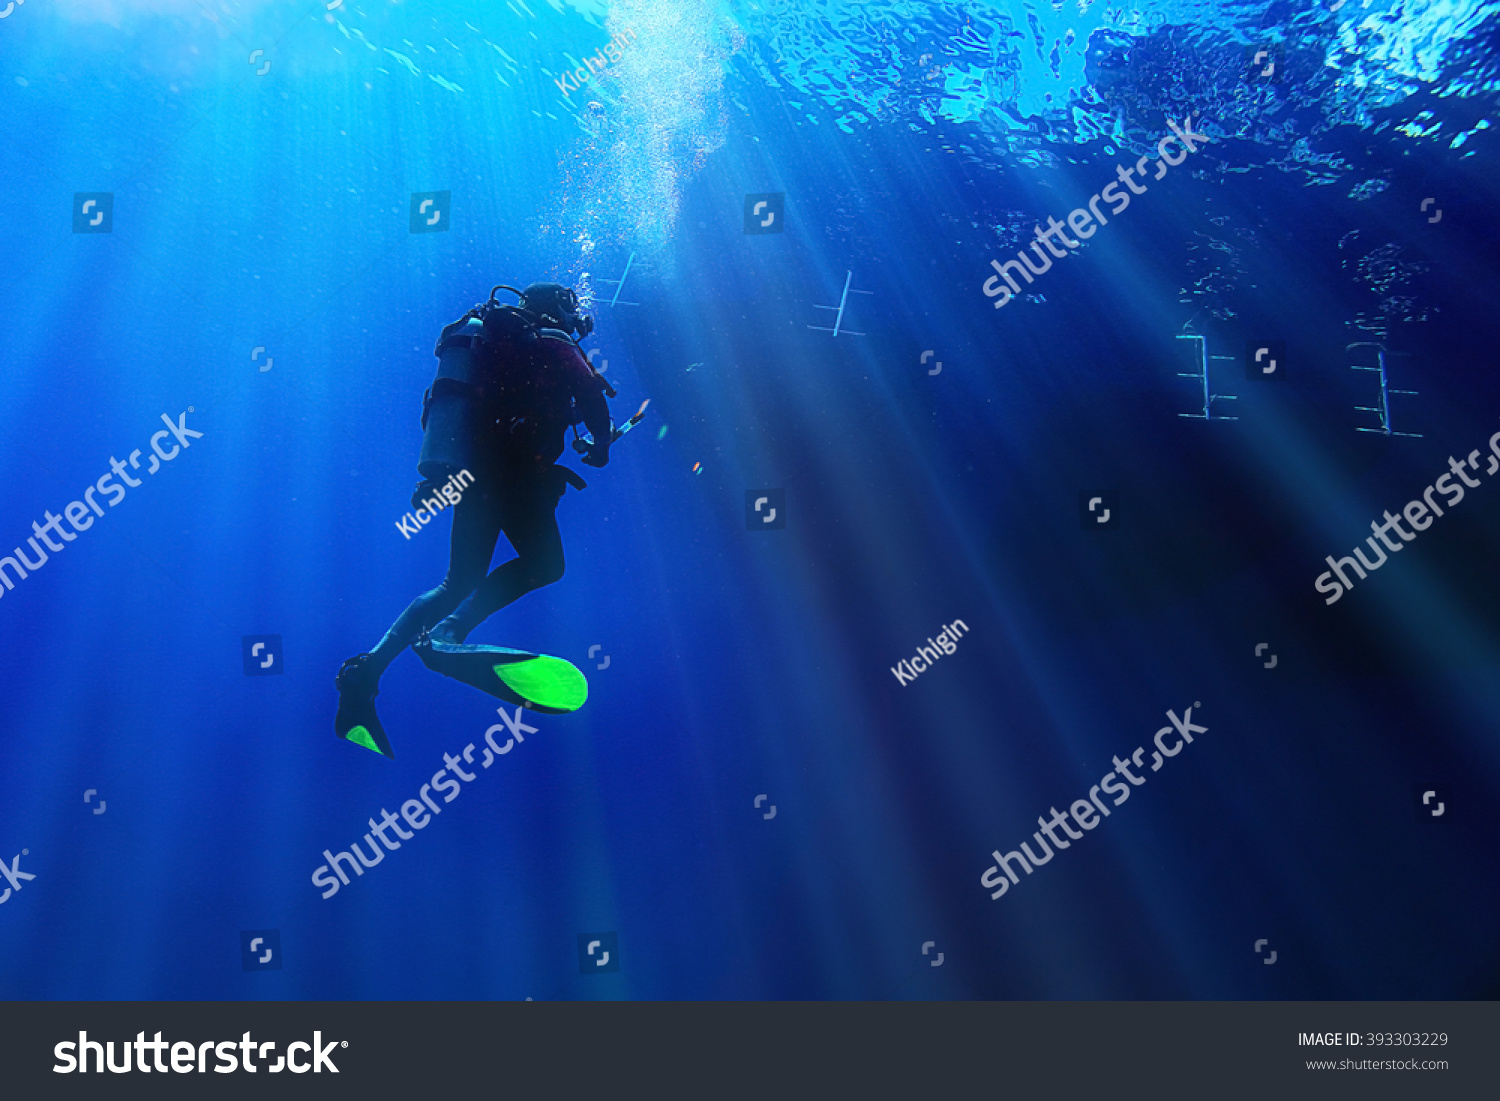 unusual photo diver underwater background #393303229